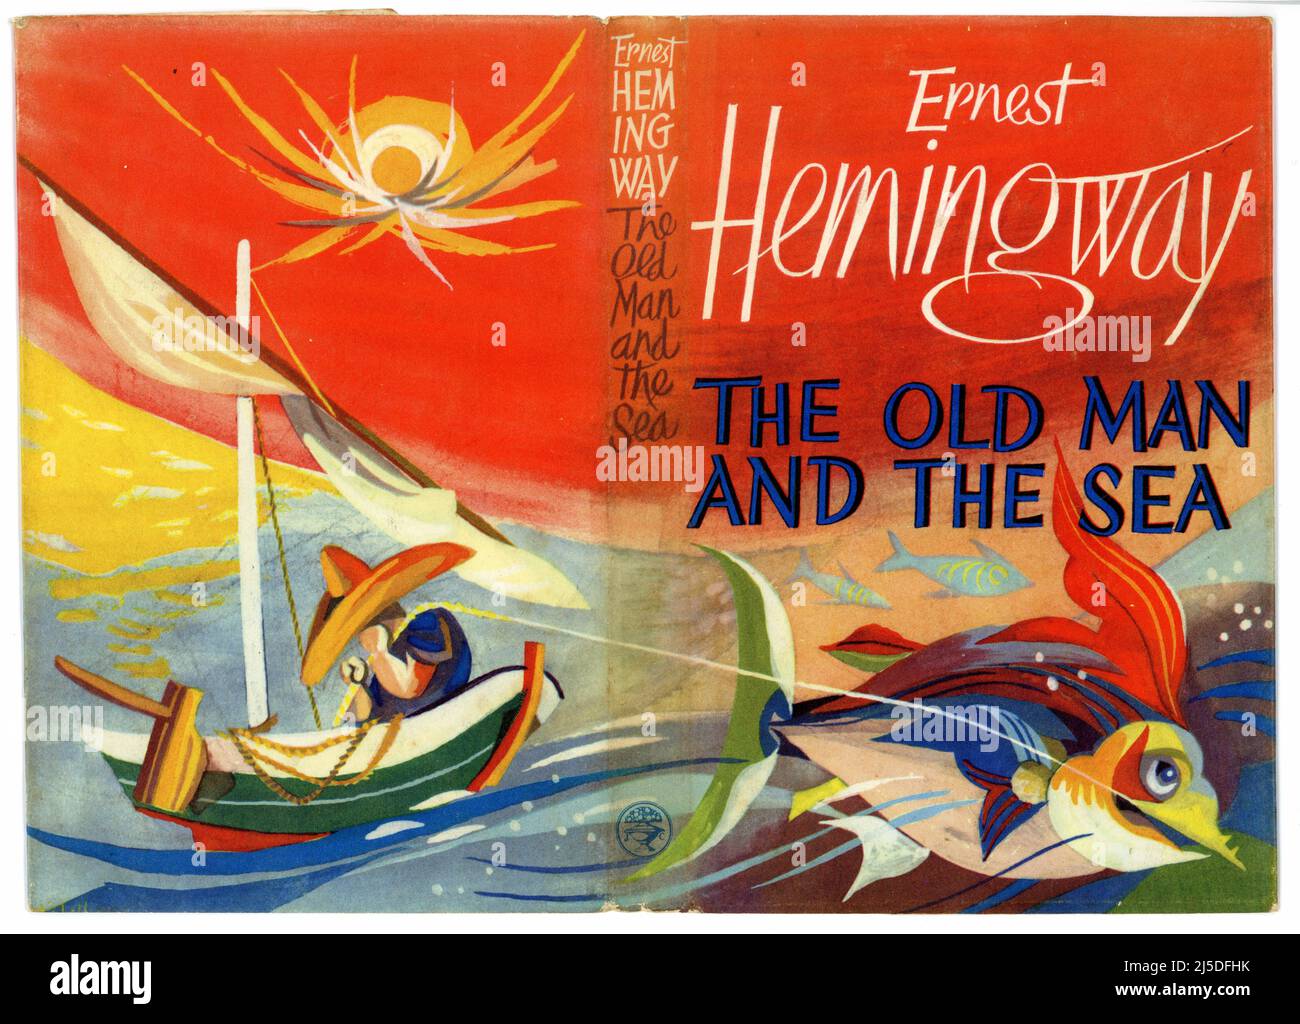 Wunderbares Original Retro / Mid-Century Illustrated Book Cover von 'The Old man and the Sea', veröffentlicht 1952 von dem berühmten amerikanischen Autor Ernest Hemingway. Illustriert von Hans Tisdall. Erste britische Publikation. Stockfoto